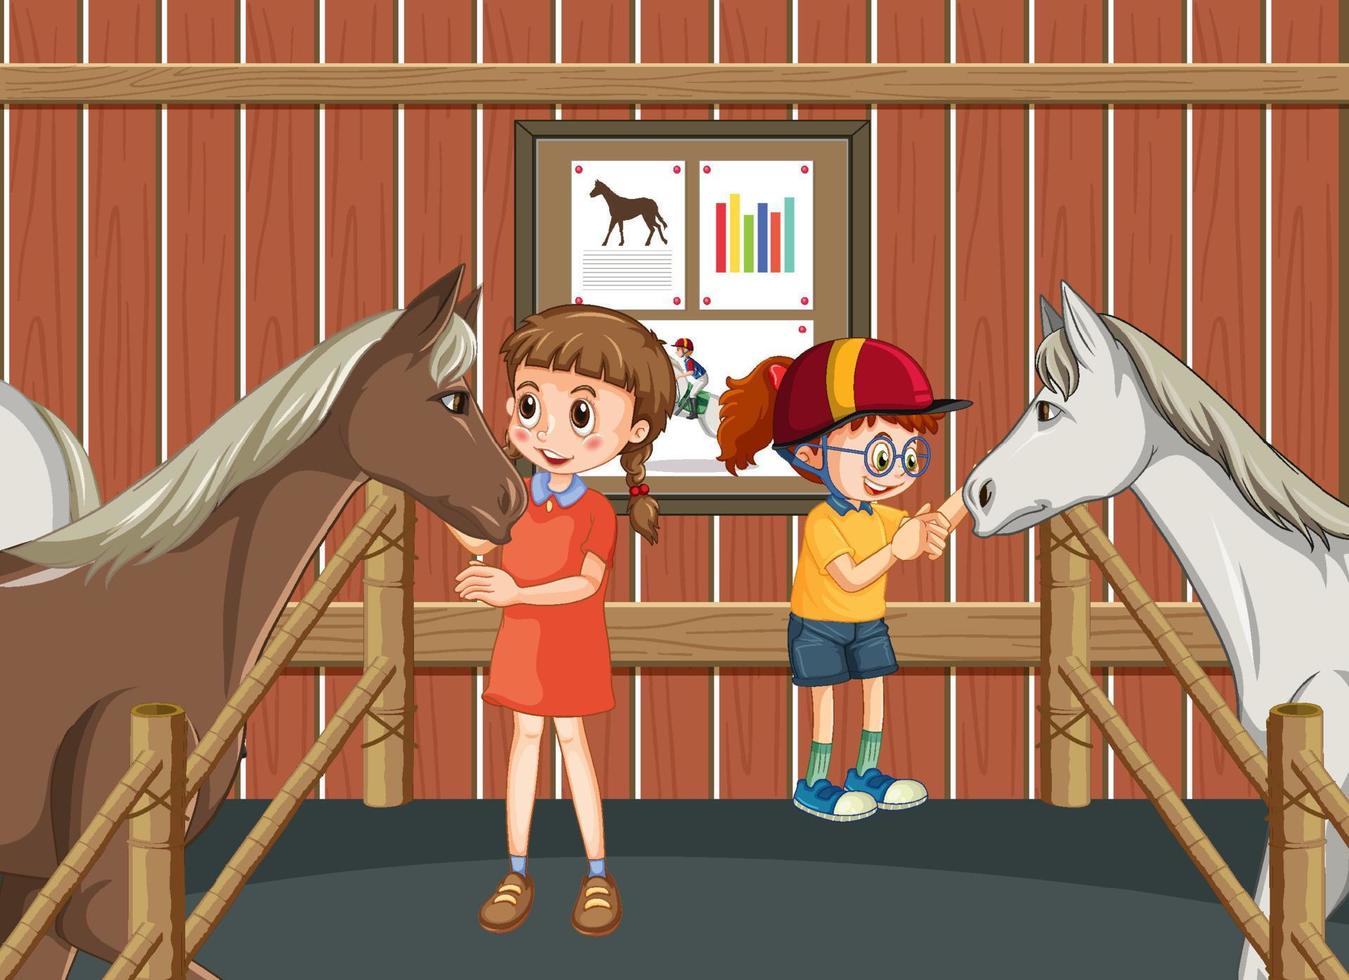 ein junge und ein mädchen mit einem pferd in einer stabilen szene vektor